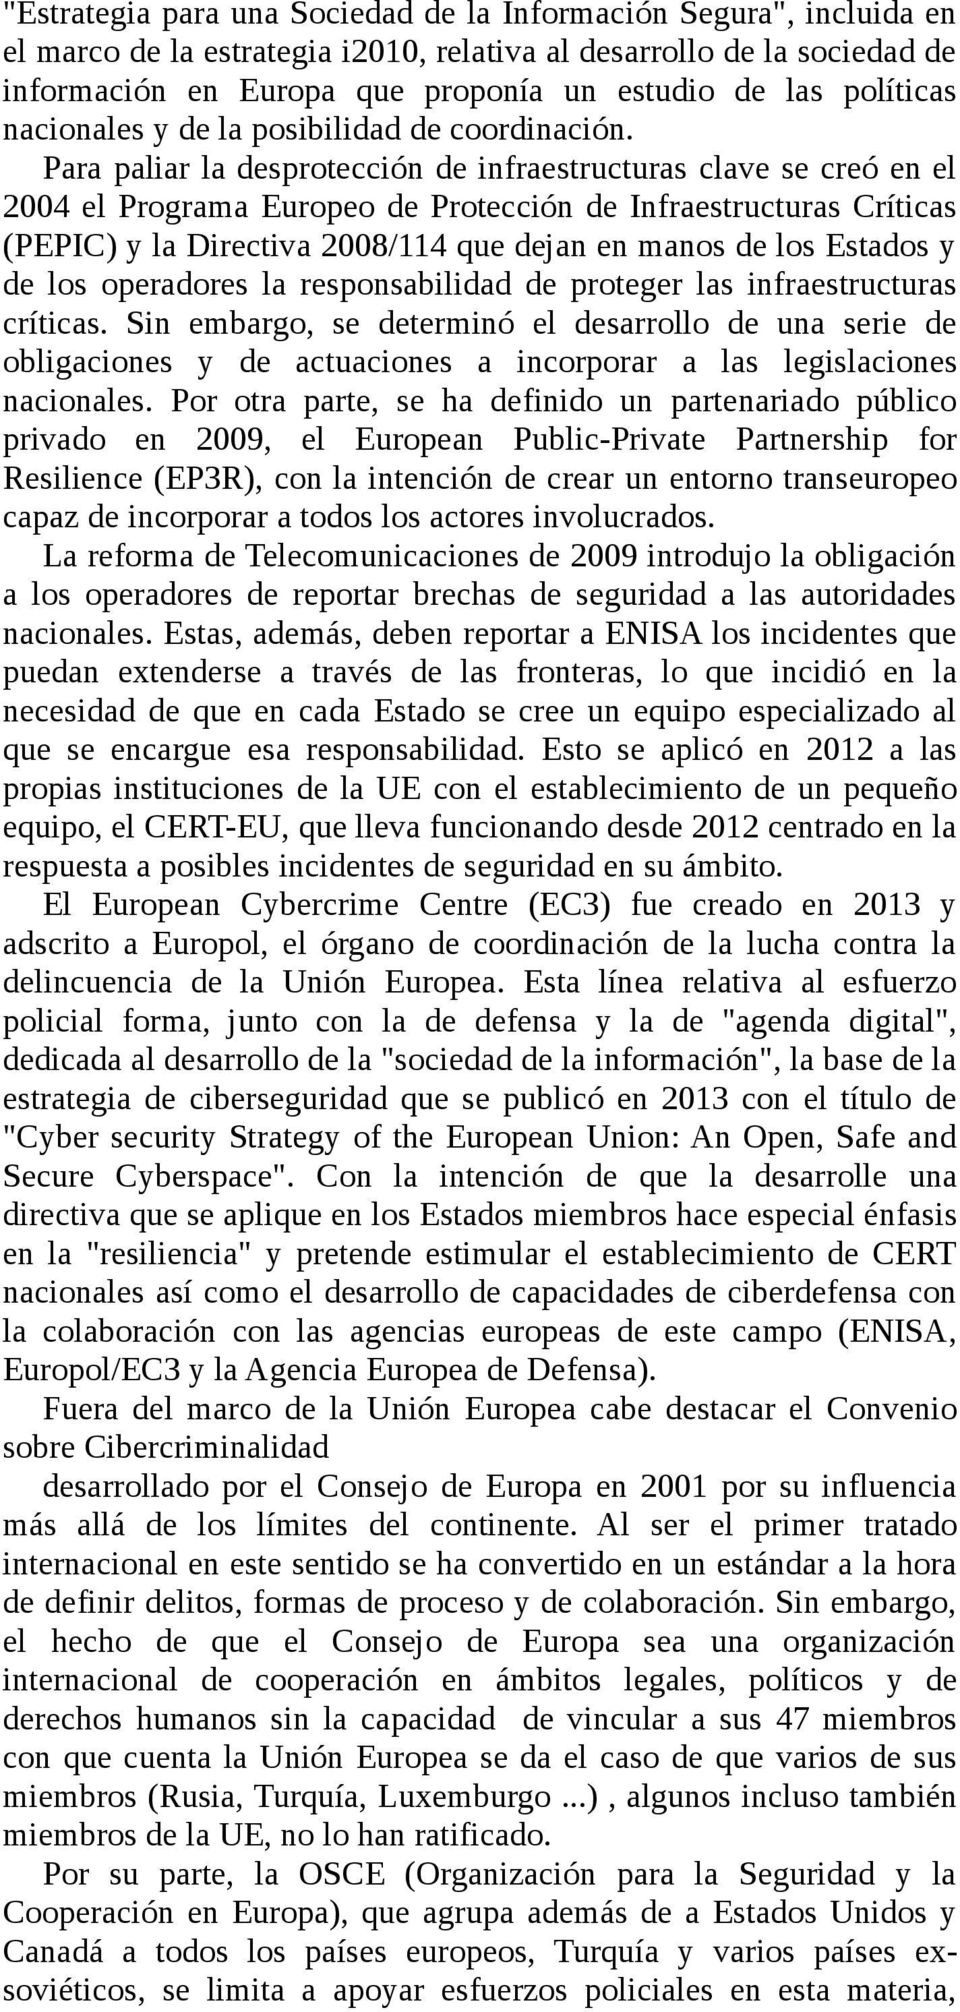 Para paliar la desprotección de infraestructuras clave se creó en el 2004 el Programa Europeo de Protección de Infraestructuras Críticas (PEPIC) y la Directiva 2008/114 que dejan en manos de los